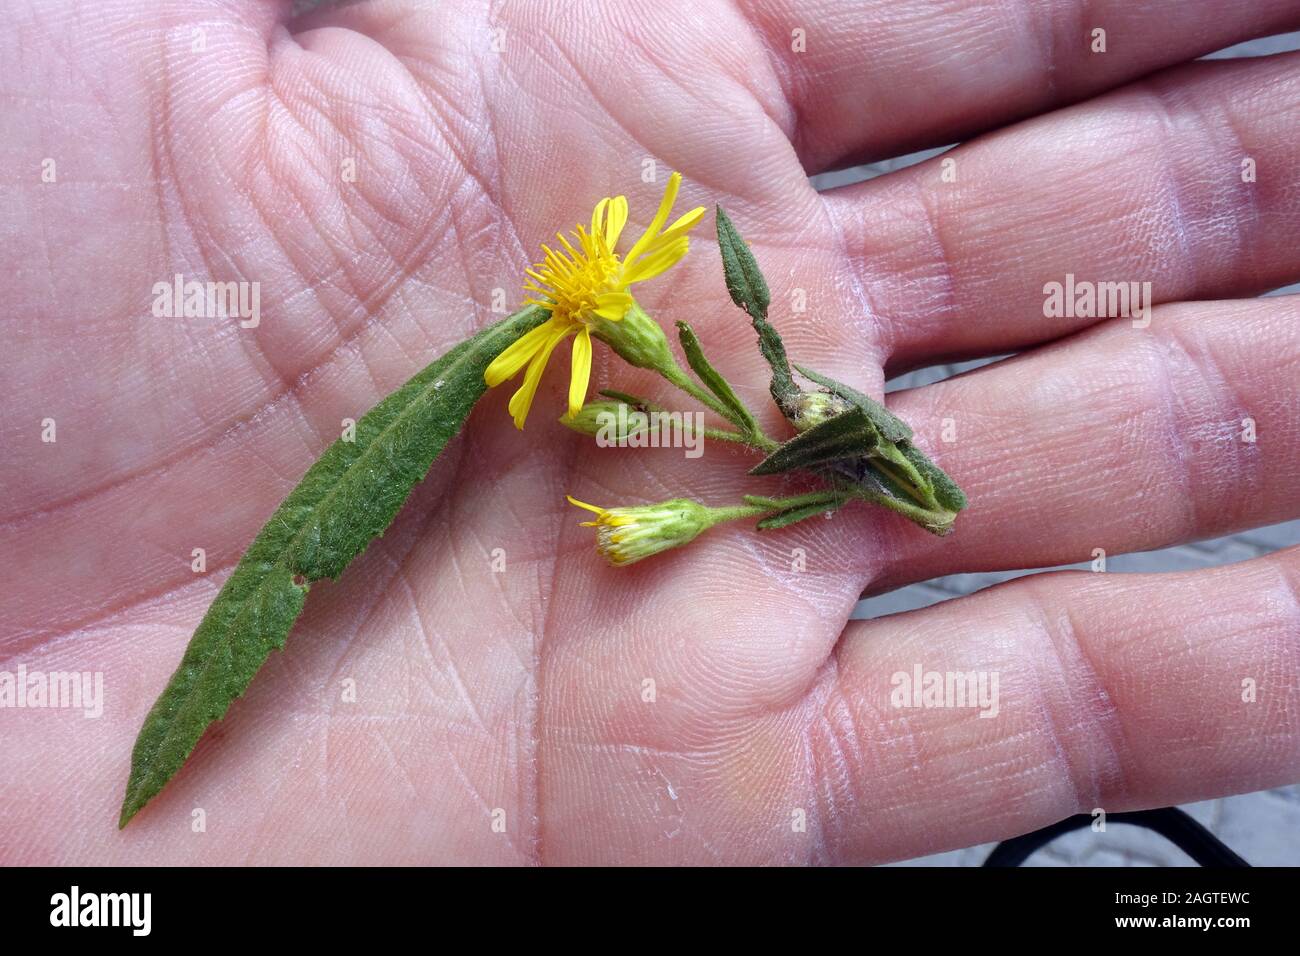 Breitblättrige Klebalant (Dittrichia viscosa Subsp angustifolia)-Blatt und Blüte auf der Handfläche, Bafra, Türkische Republik Nordzypern Stockfoto